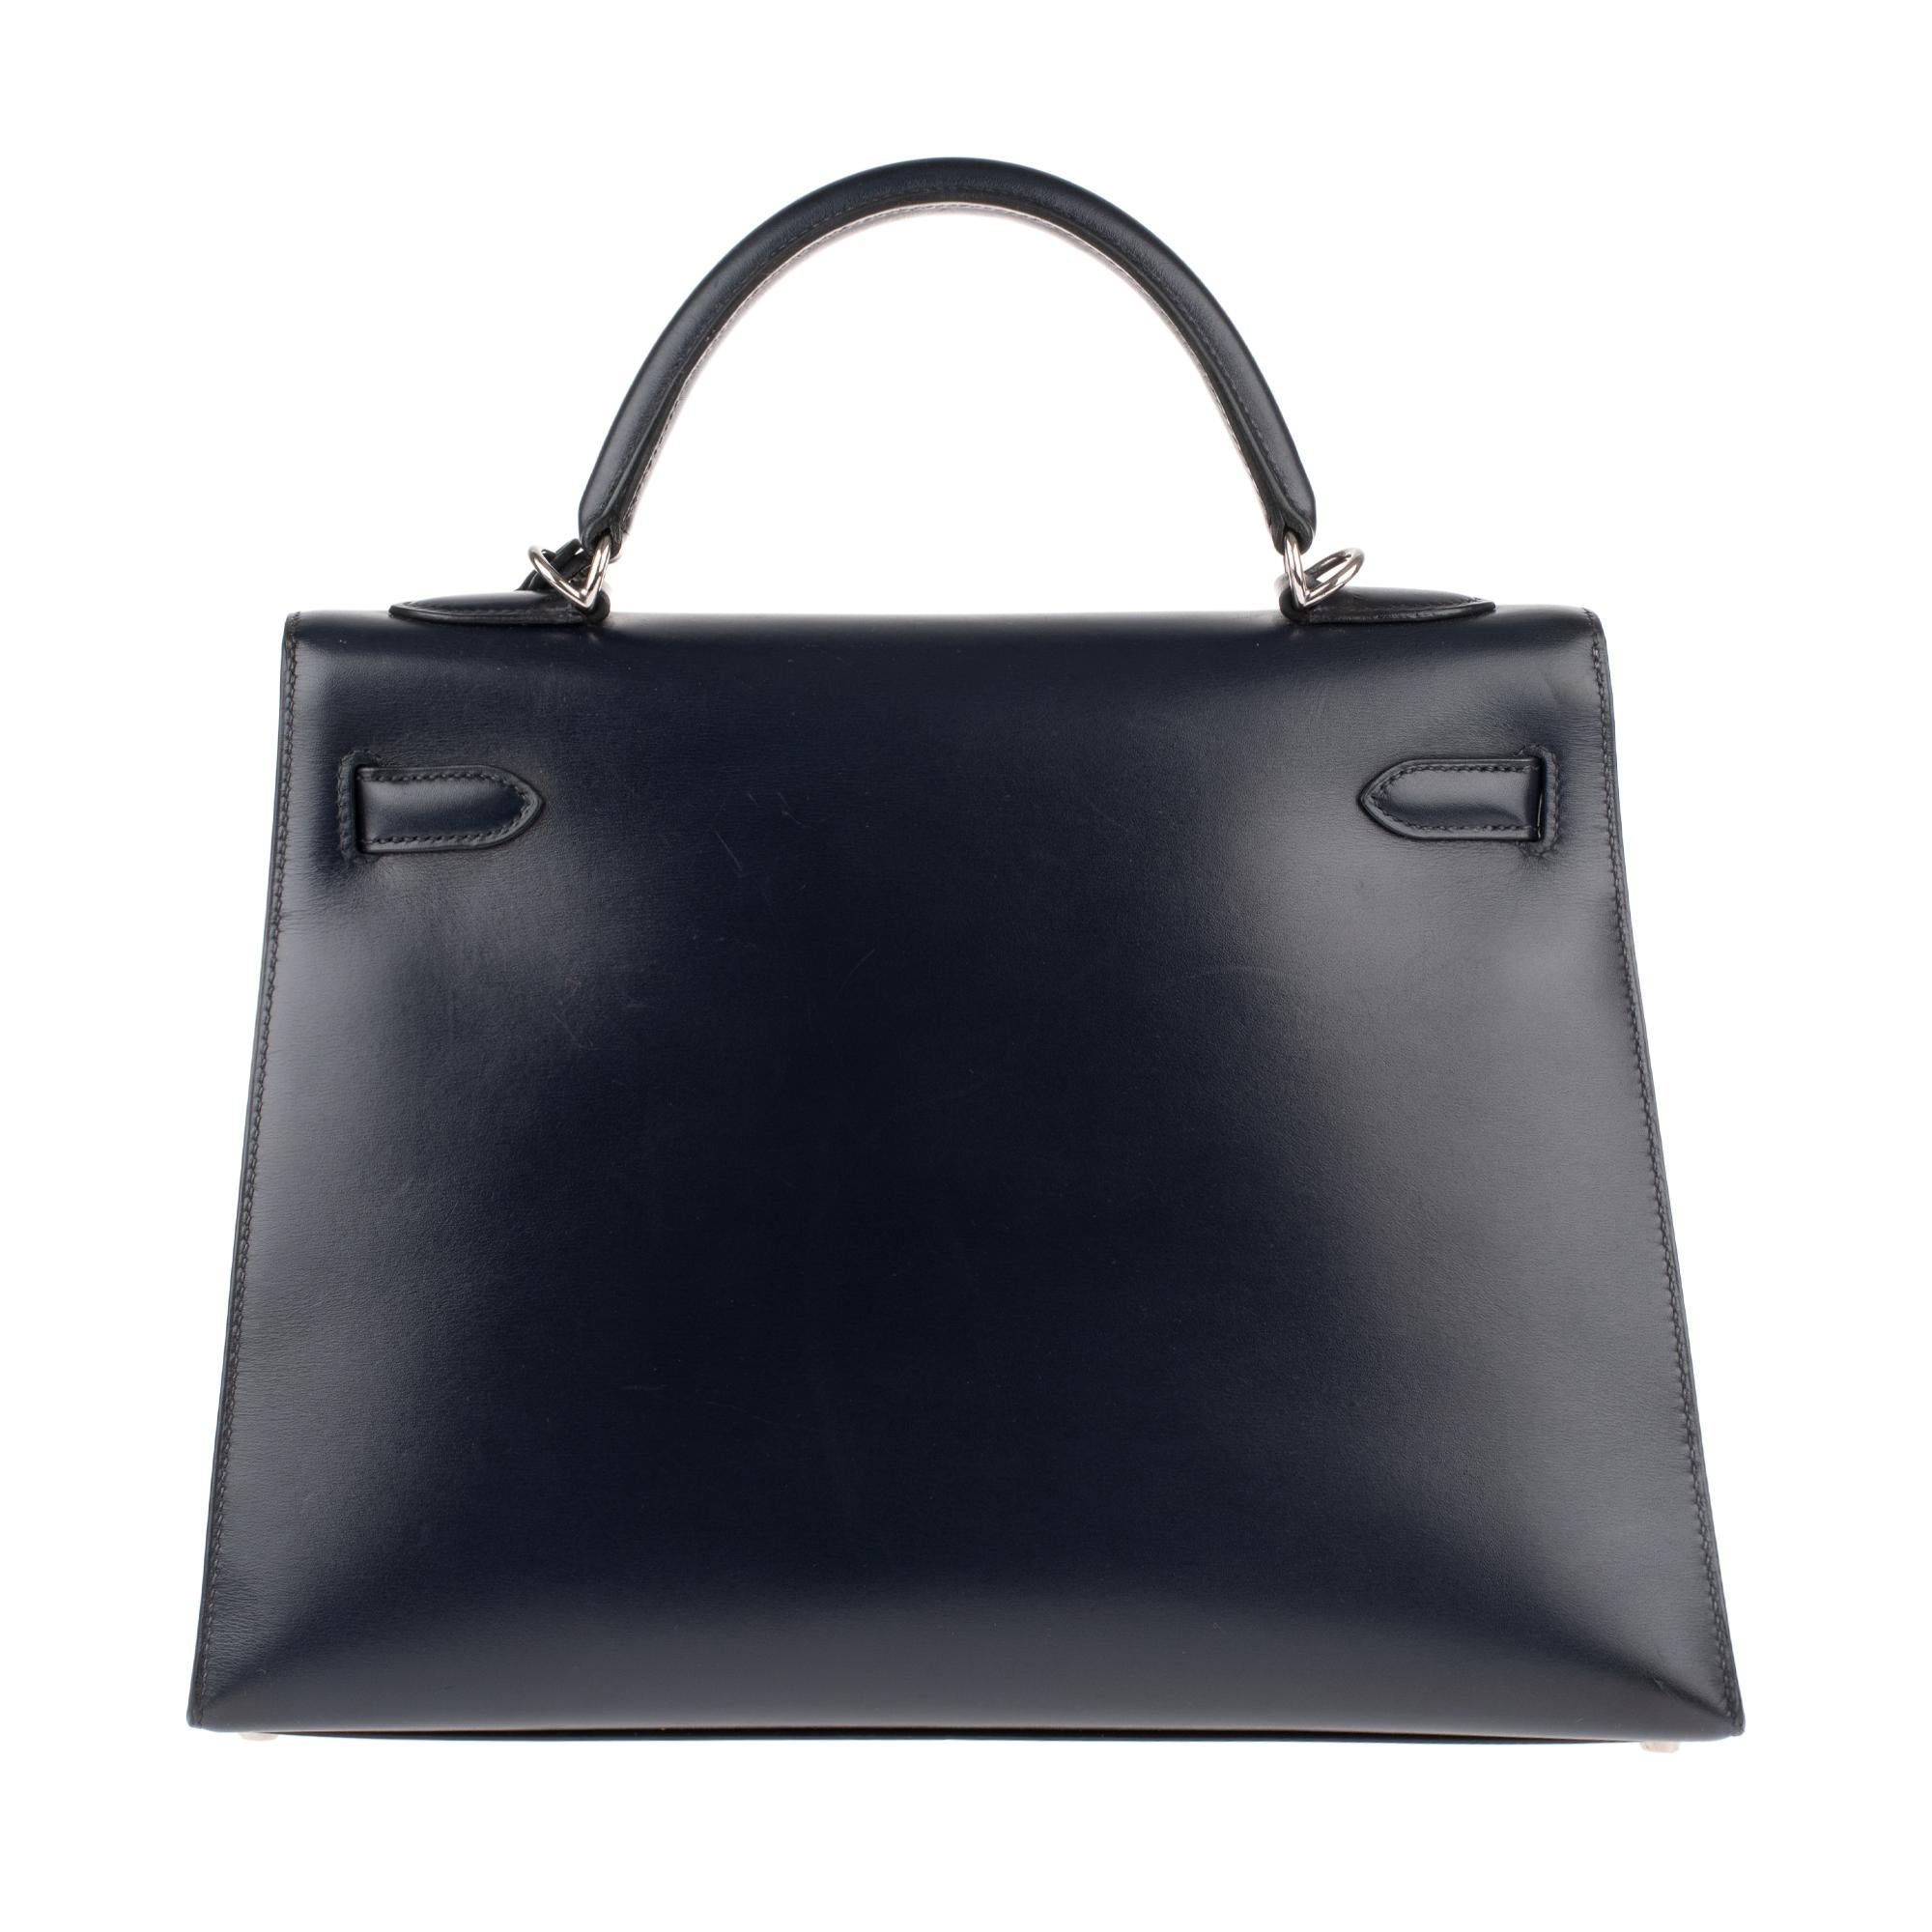 Collector Hermès Kelly 32 Handtasche mit Riemen in marineblauem Kalbsleder Box Leder! (Schwarz)